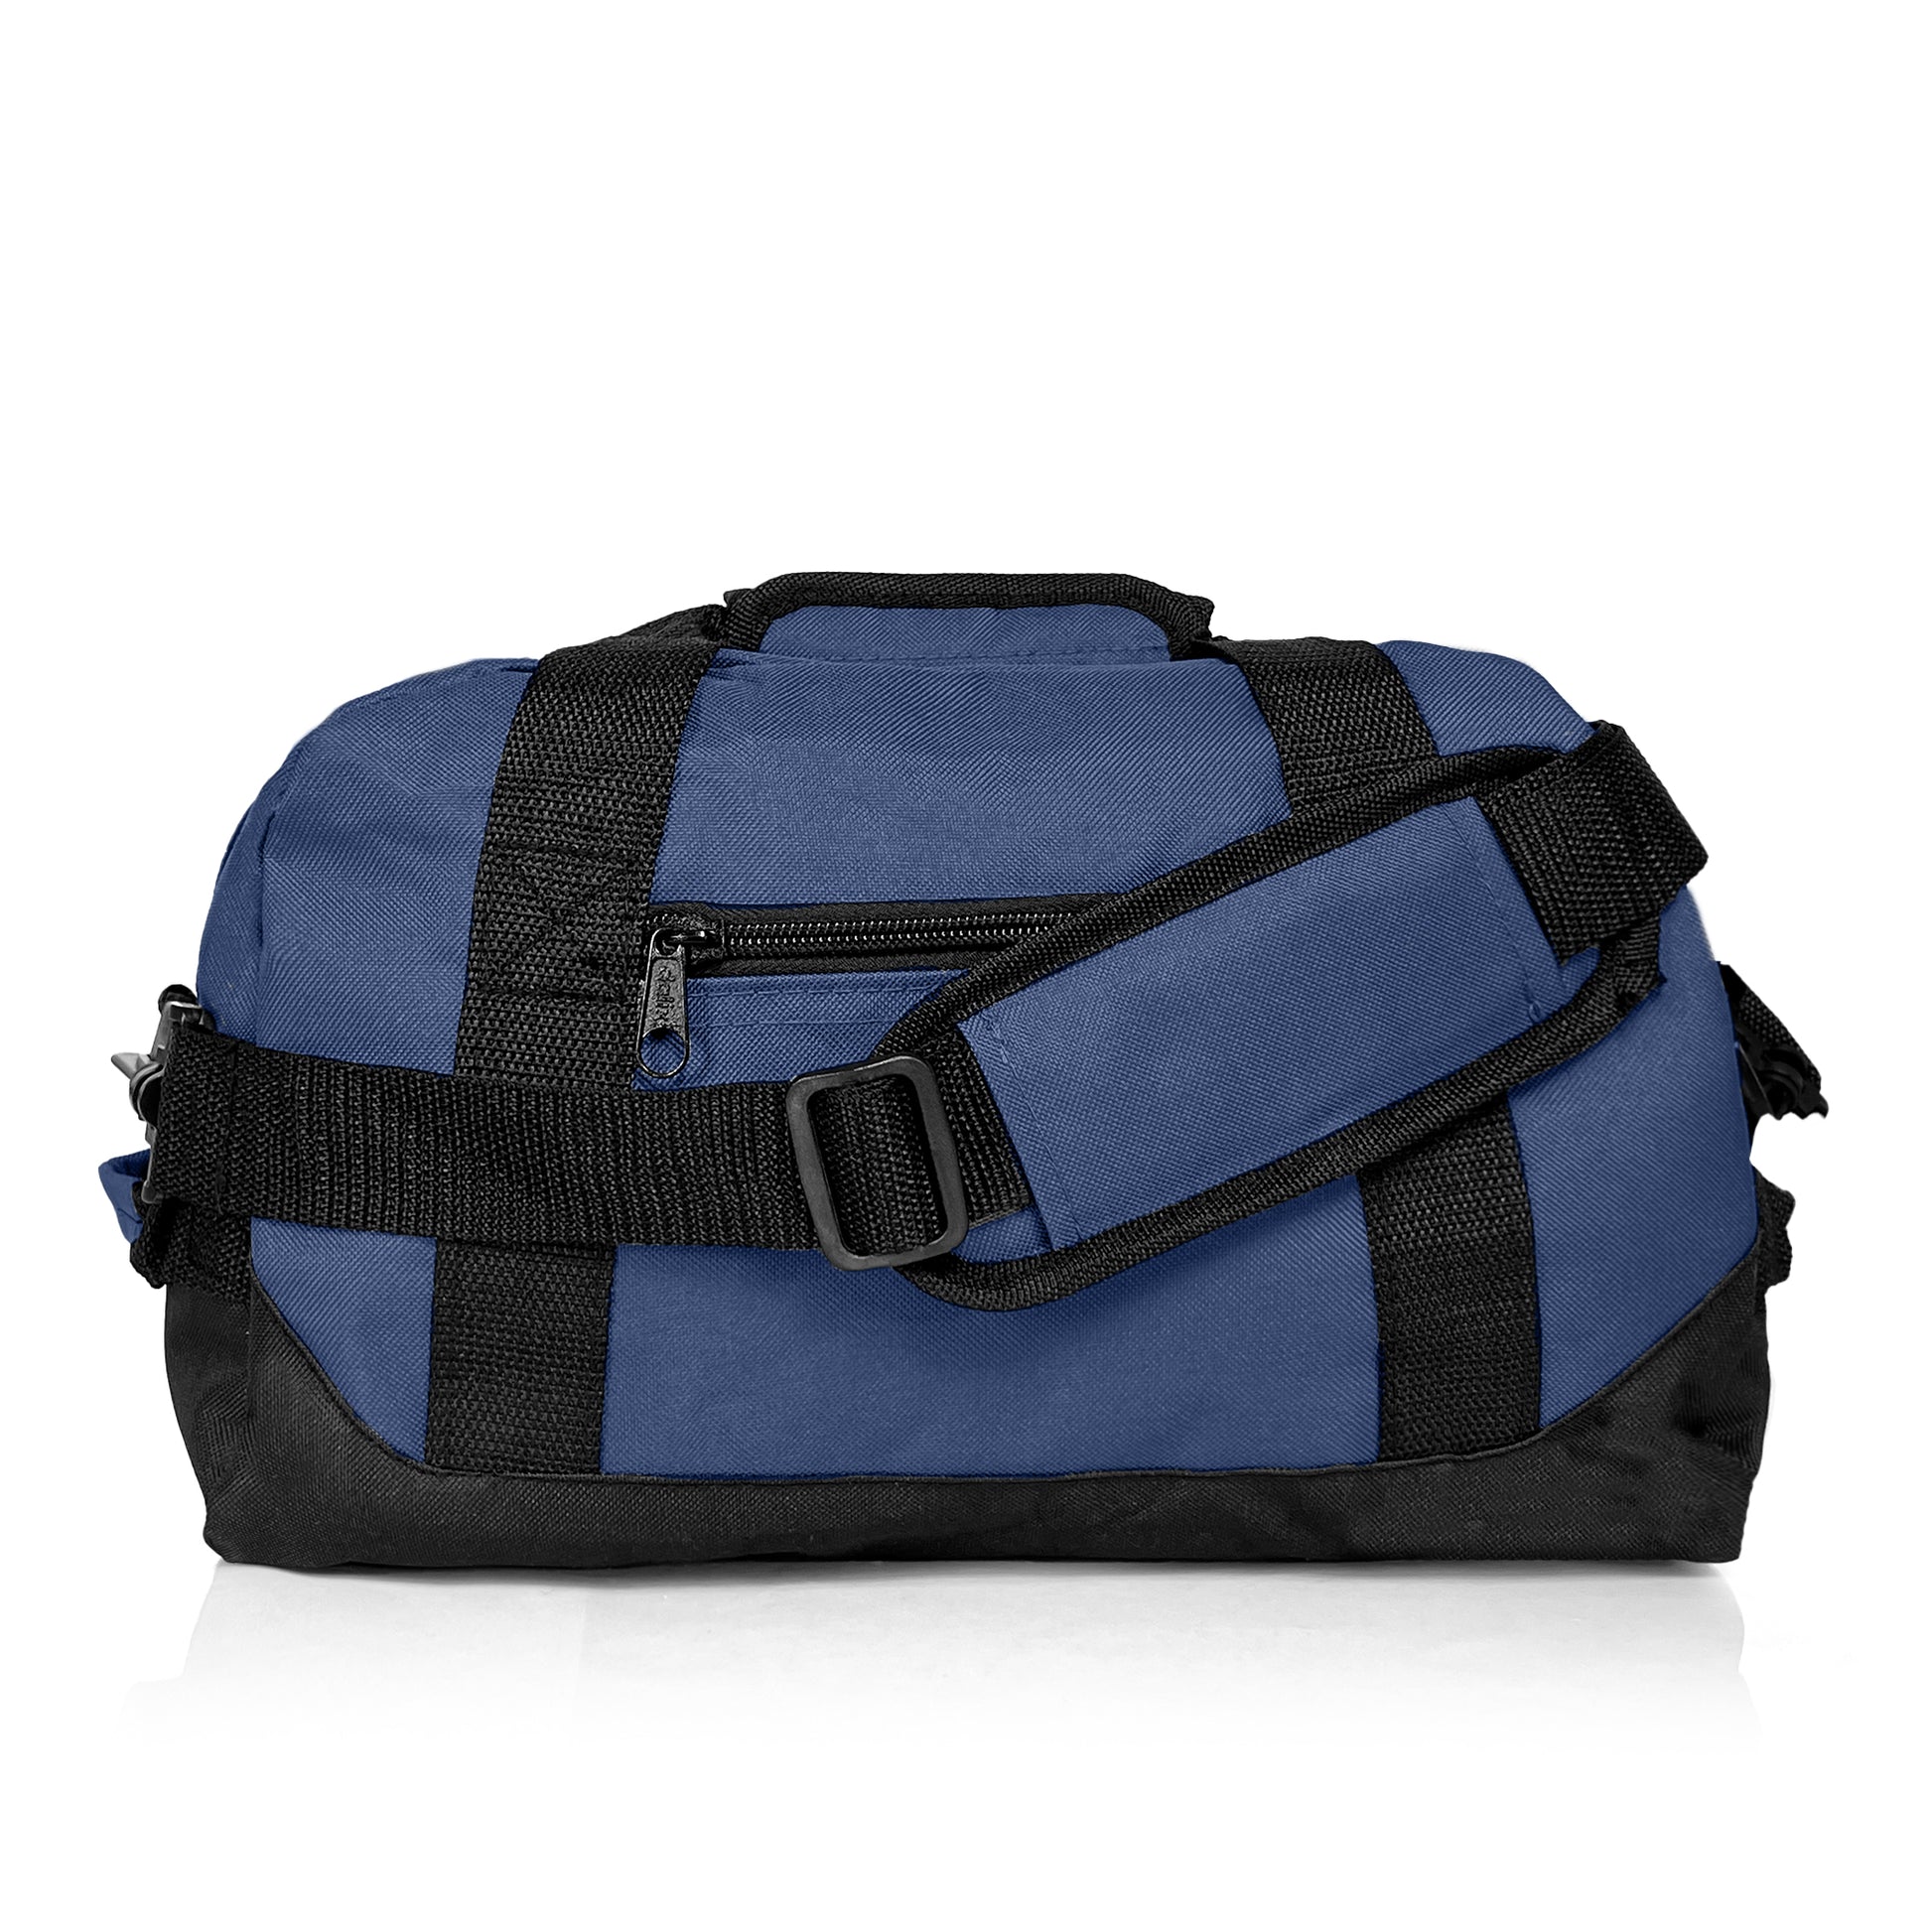 Tangled - Duffle bag — 201 Simplex